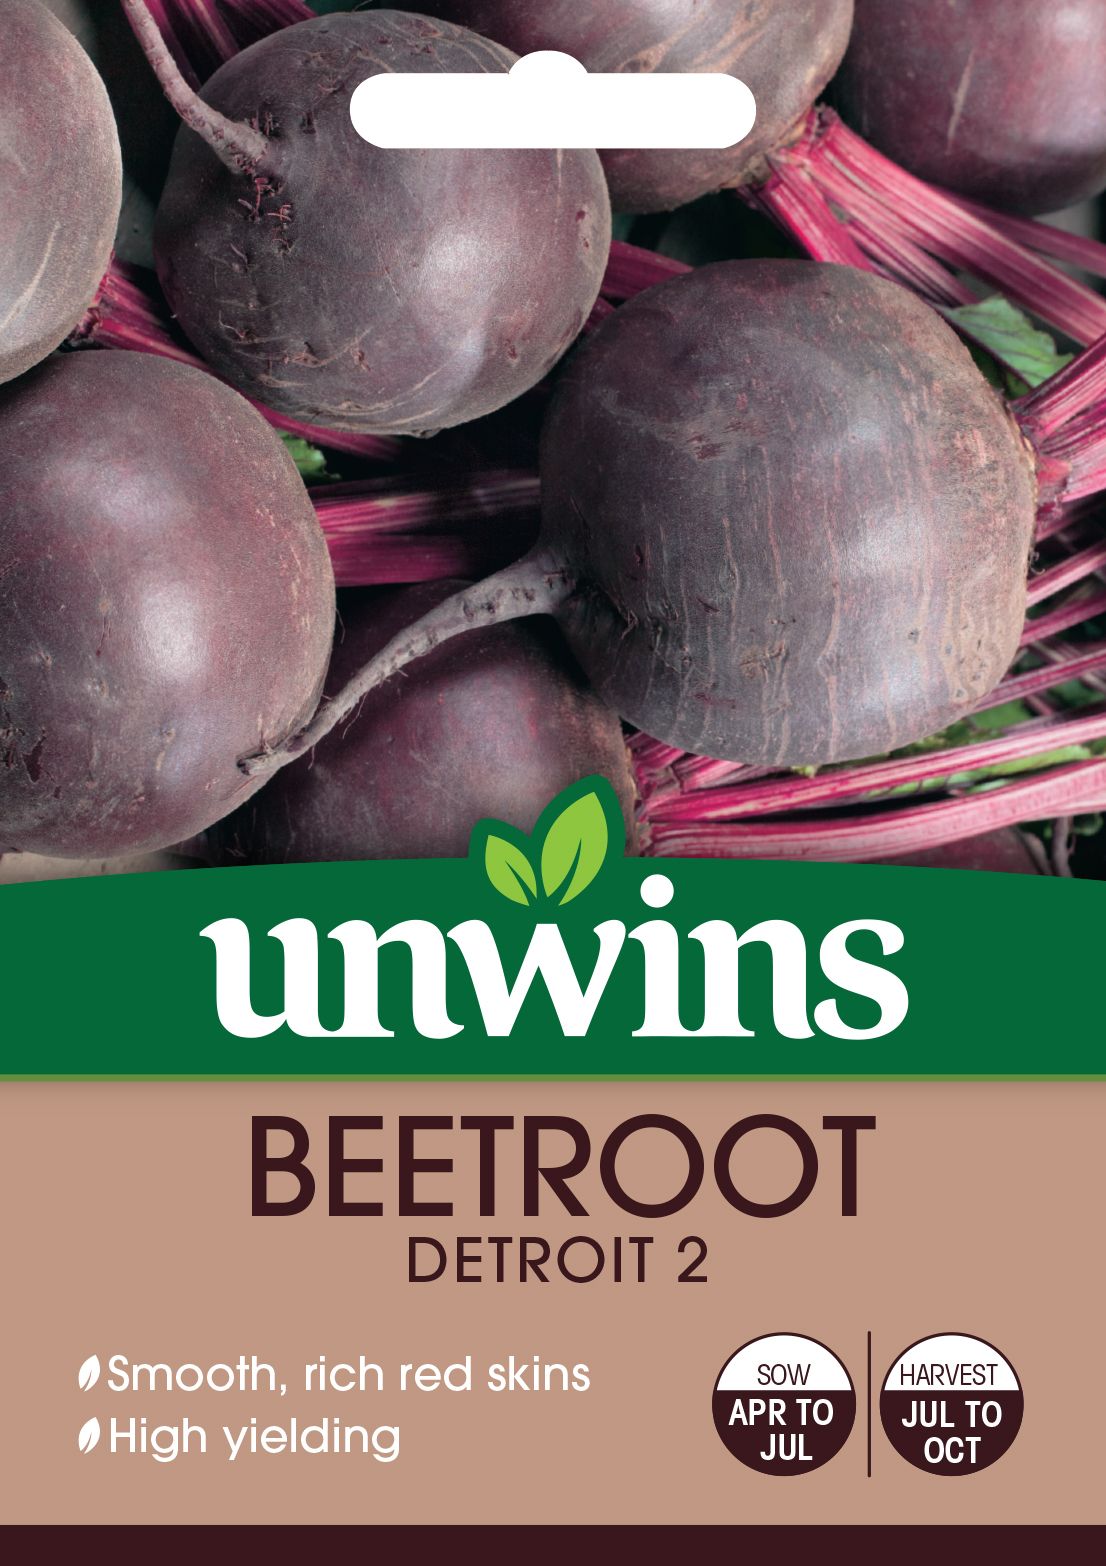 Beetroot (Round) Detroit 2